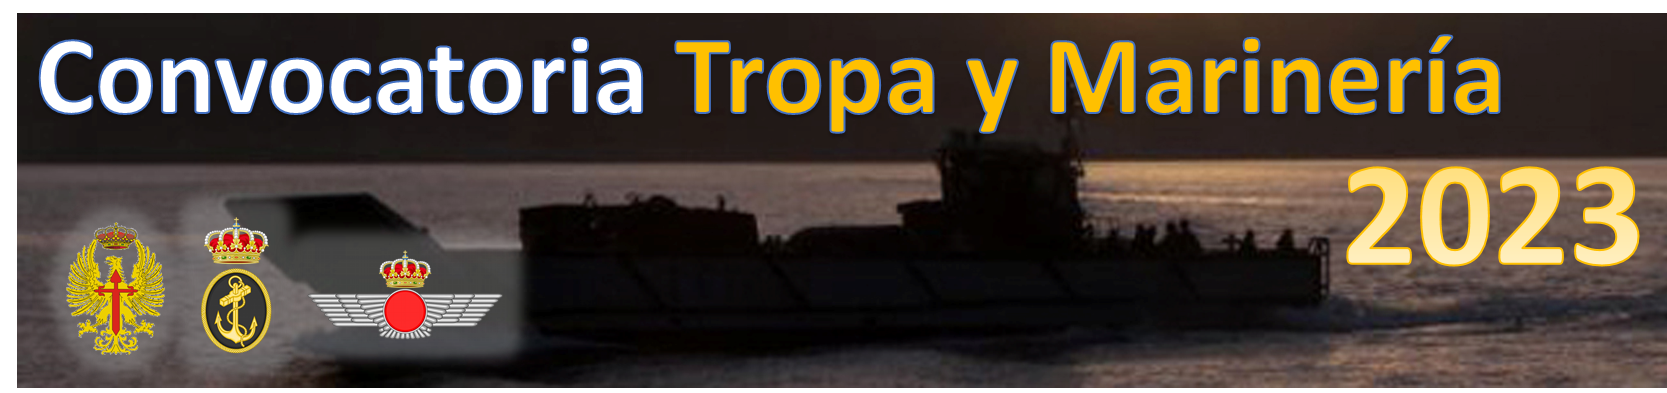 Convocatoria Tropa y marinería 2023